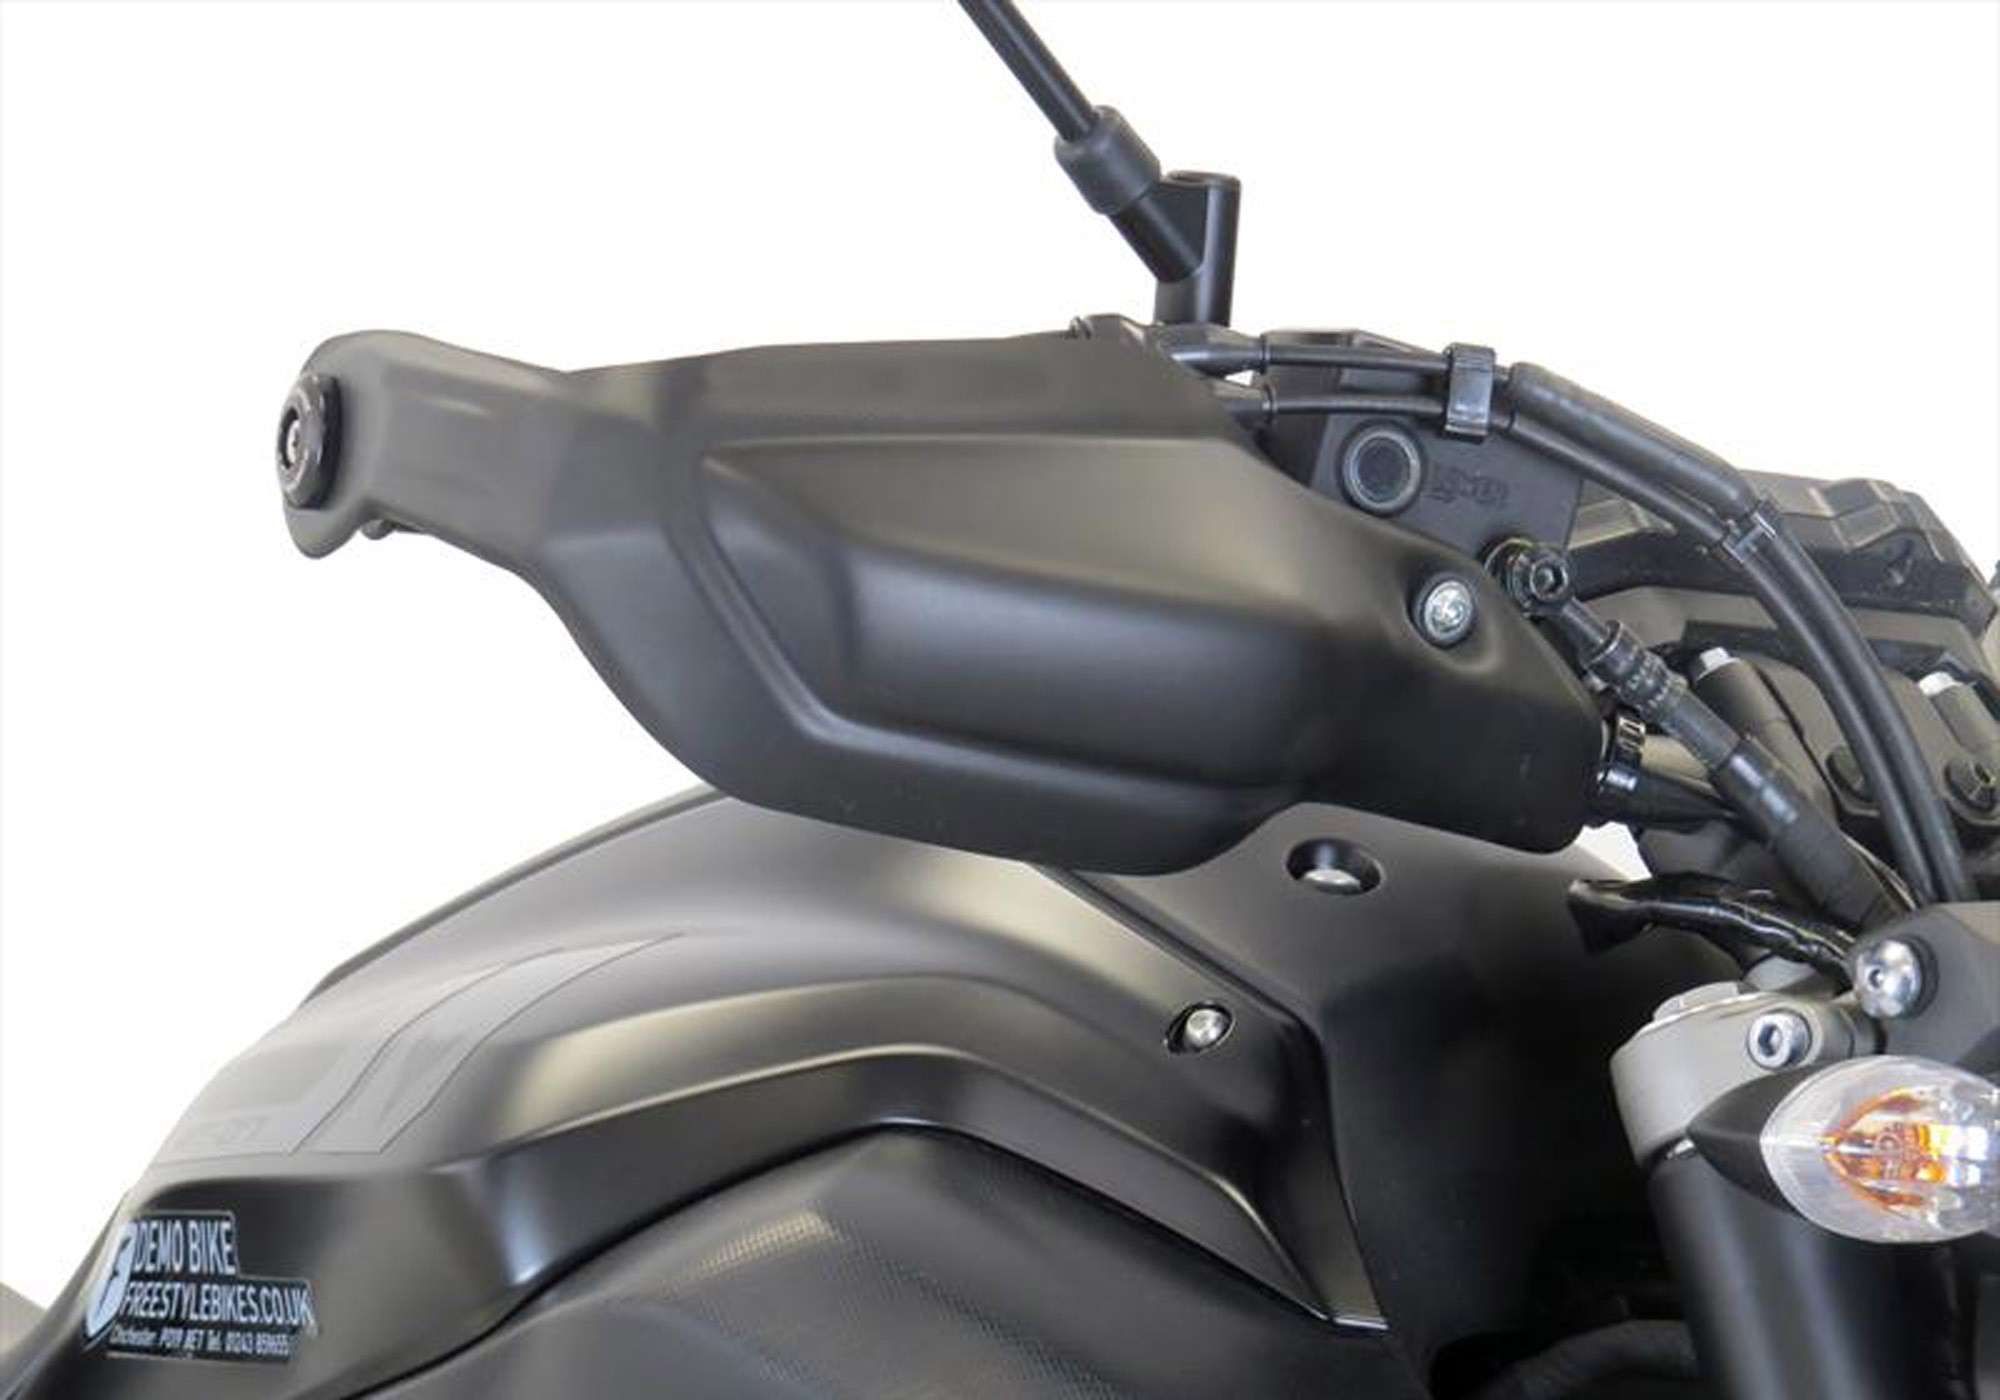 BODYSTYLE Handprotektoren schwarz-matt passt für Yamaha MT-07